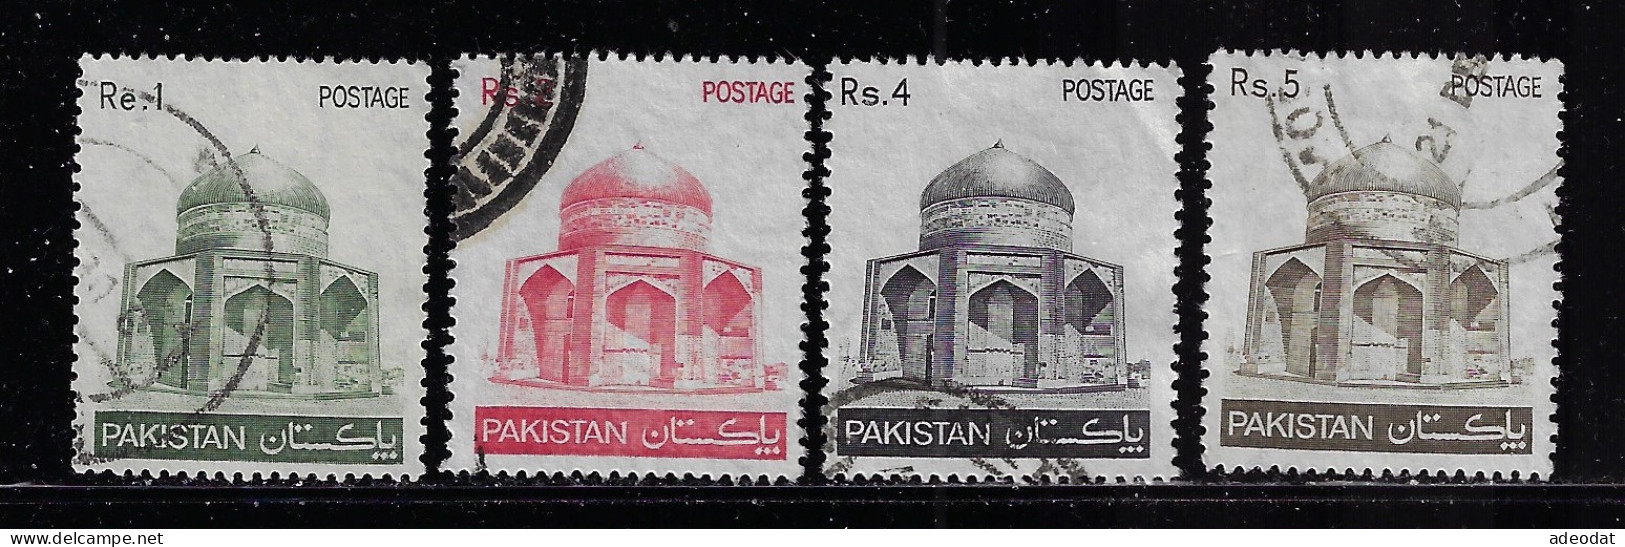 PAKISTAN  1978  SCOTT #470,472,474,475   USED  $0.80 - Pakistán